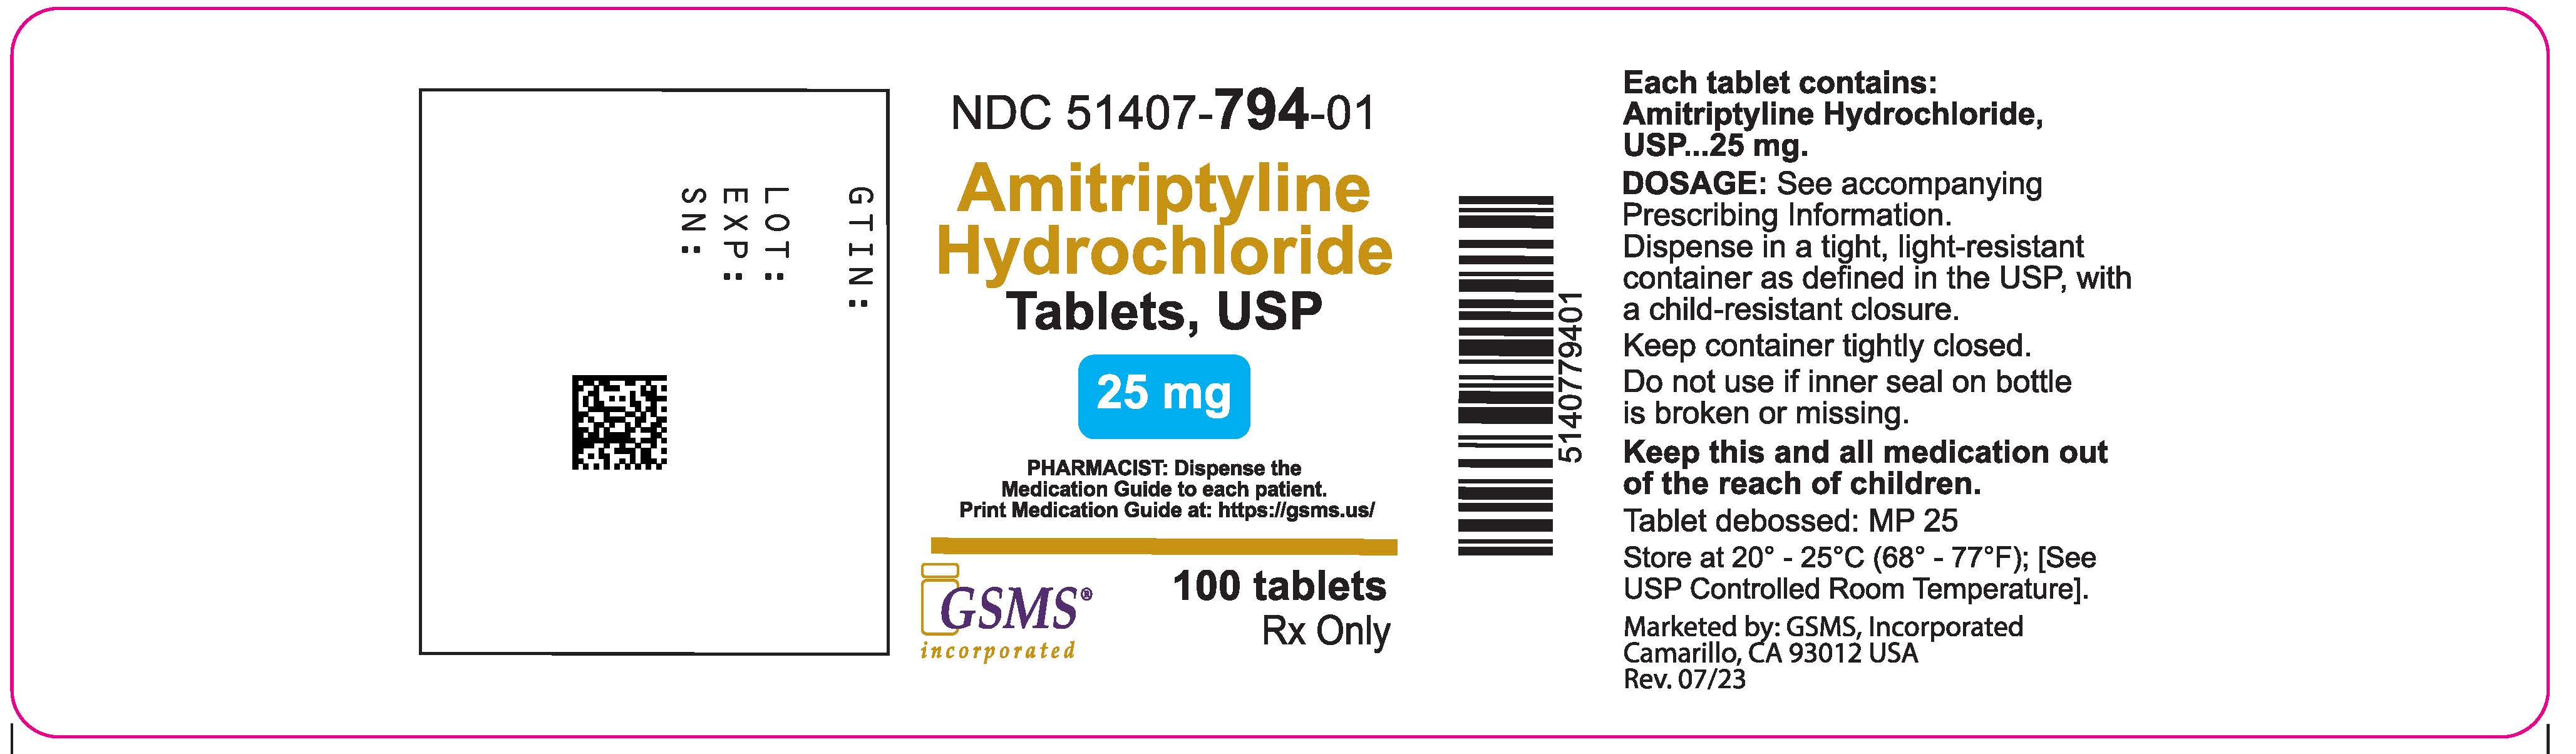 Amitriptyline Hydrochloride - Sun - 51407-794-01OL - 1000c - Rev.0723.jpg